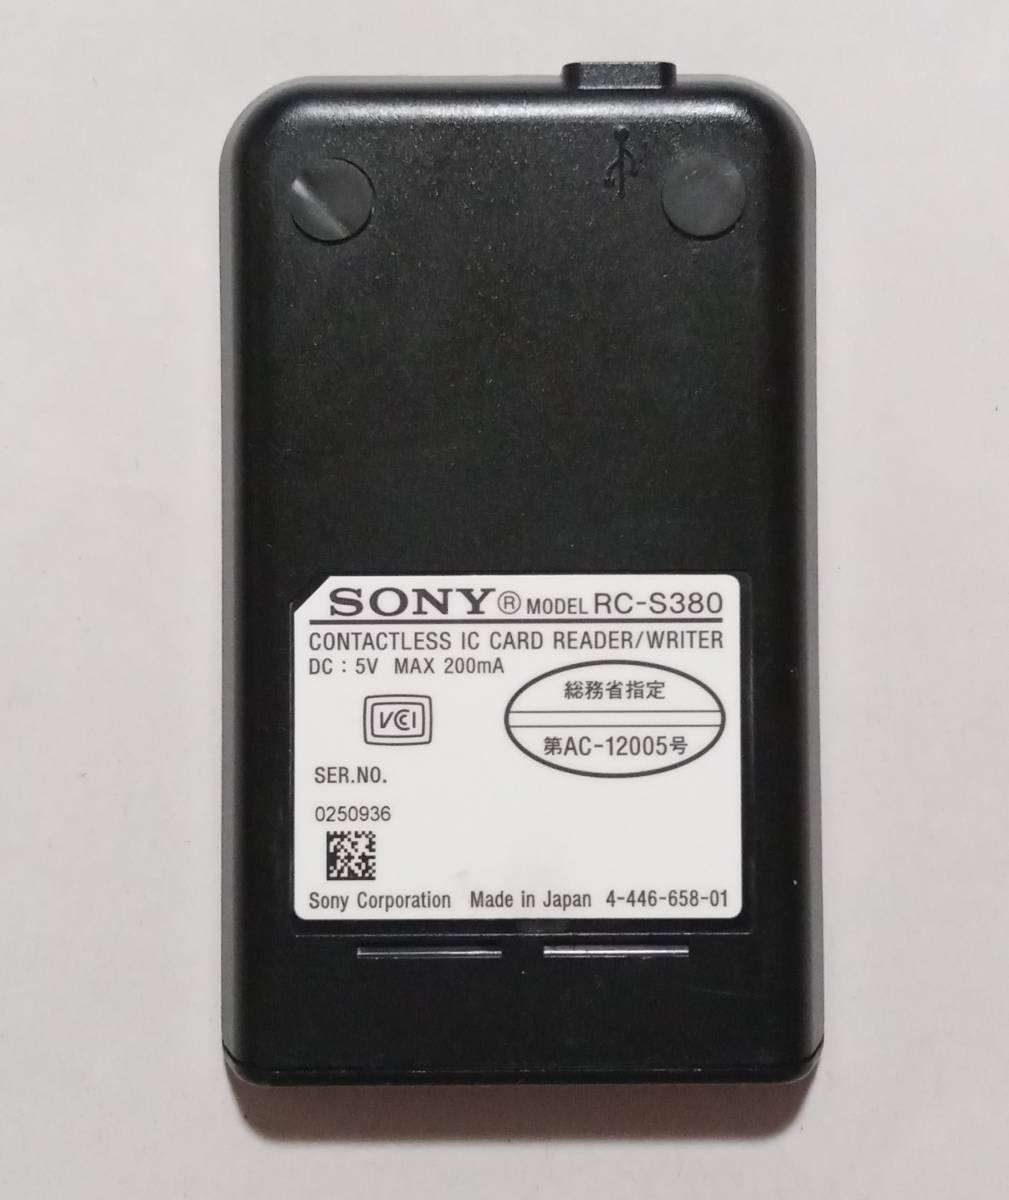 【動作品】SONY PaSoRi RC-S380 非接触ICカードリーダー【送料無料】e-tax 確定申告等 マイナンバーカード 交通系電子マネー 対応 A801-23